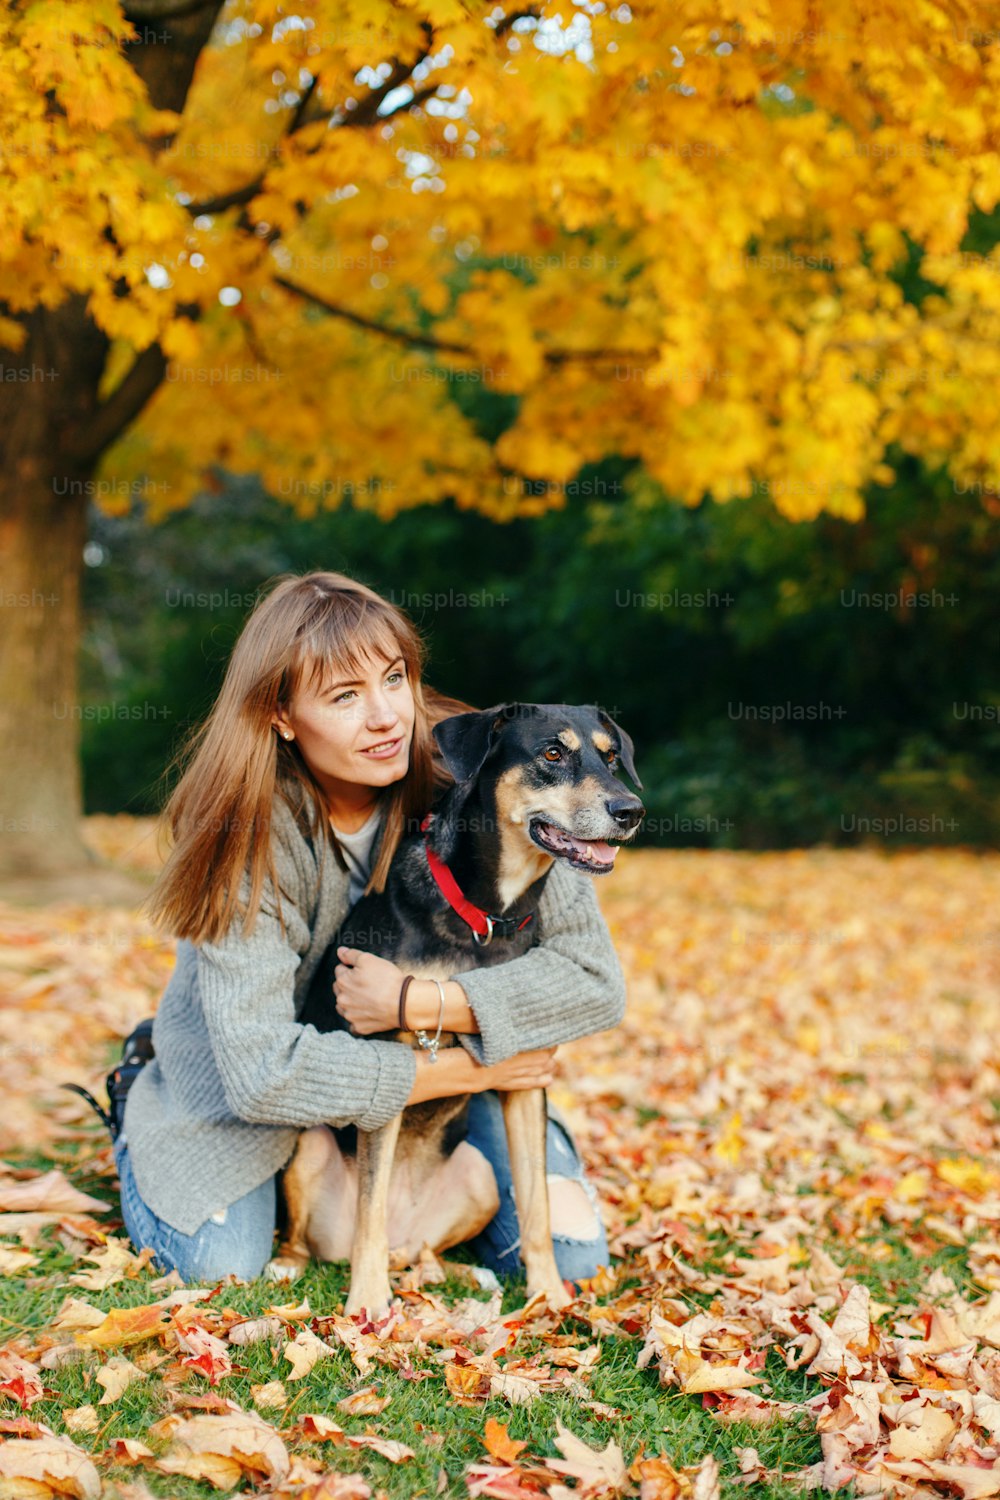 행복한 젊은 백인 여자는 개를 껴안고 땅에 앉아 있다. 가을 가을날 애완 동물과 함께 걷는 주인. 야외에서 즐거운 시간을 보내는 가장 친한 친구. 인간과 가축의 우정.